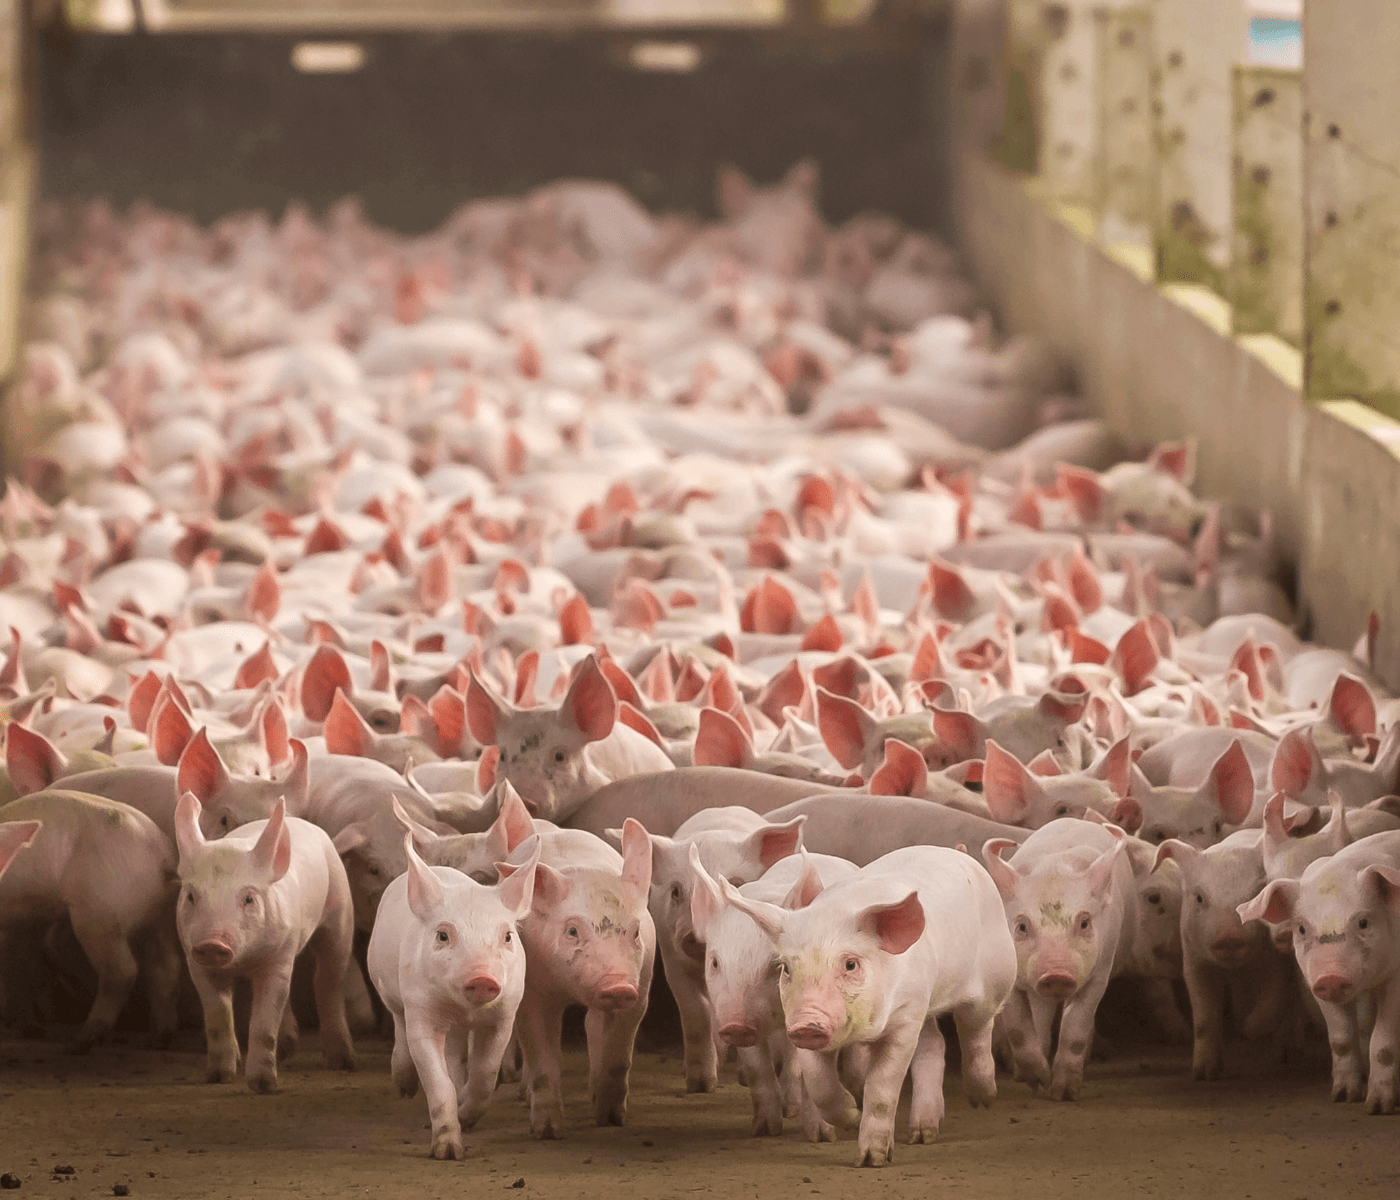 Custos de produção de suínos caem em agosto